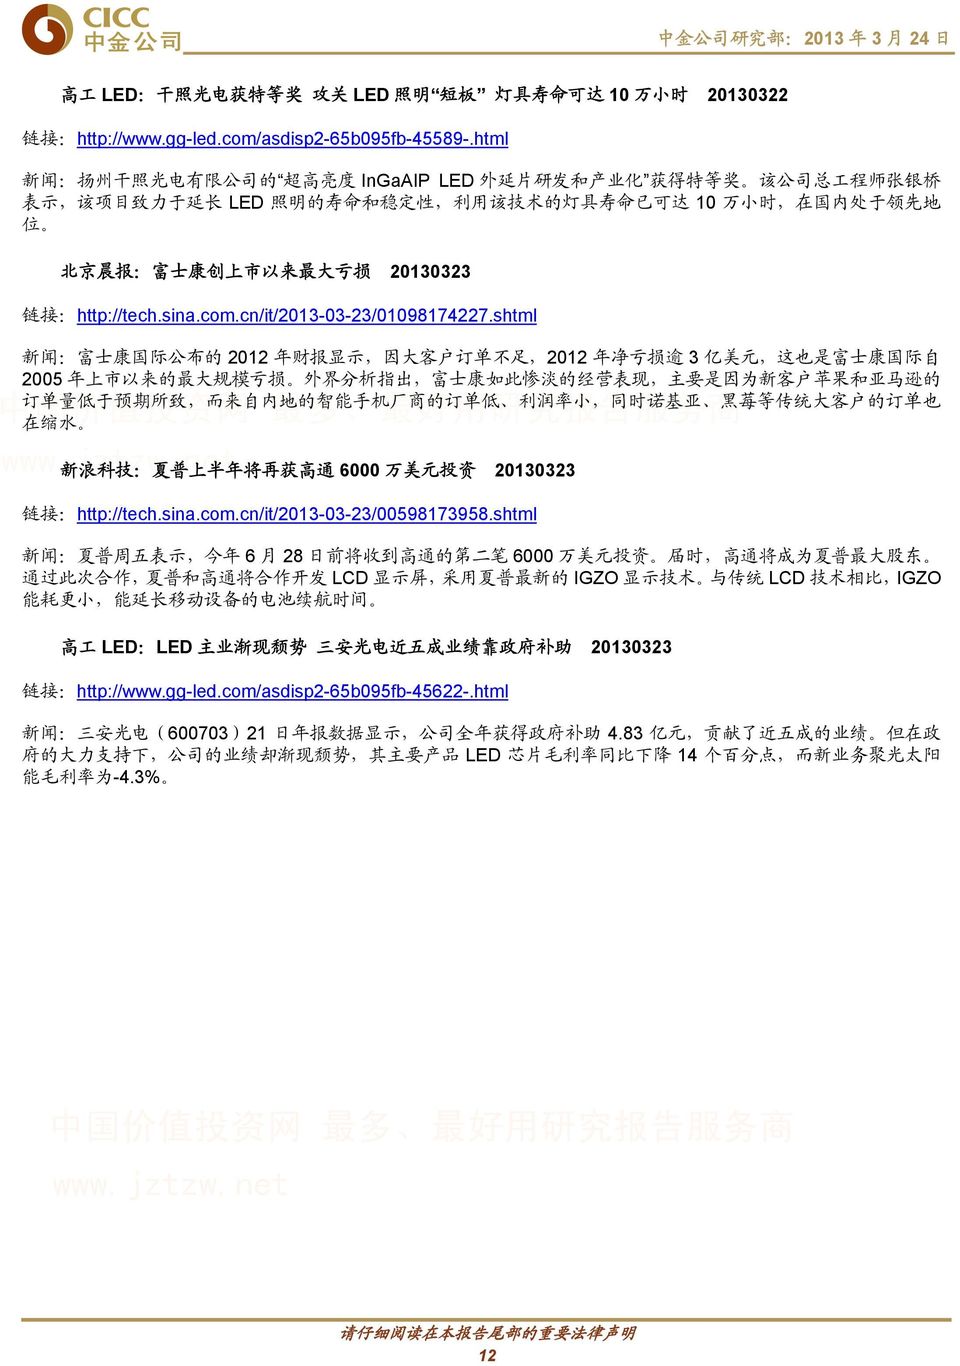 北 京 晨 报 : 富 士 康 创 上 市 以 来 最 大 亏 损 20130323 链 接 :http://tech.sina.com.cn/it/2013-03-23/01098174227.